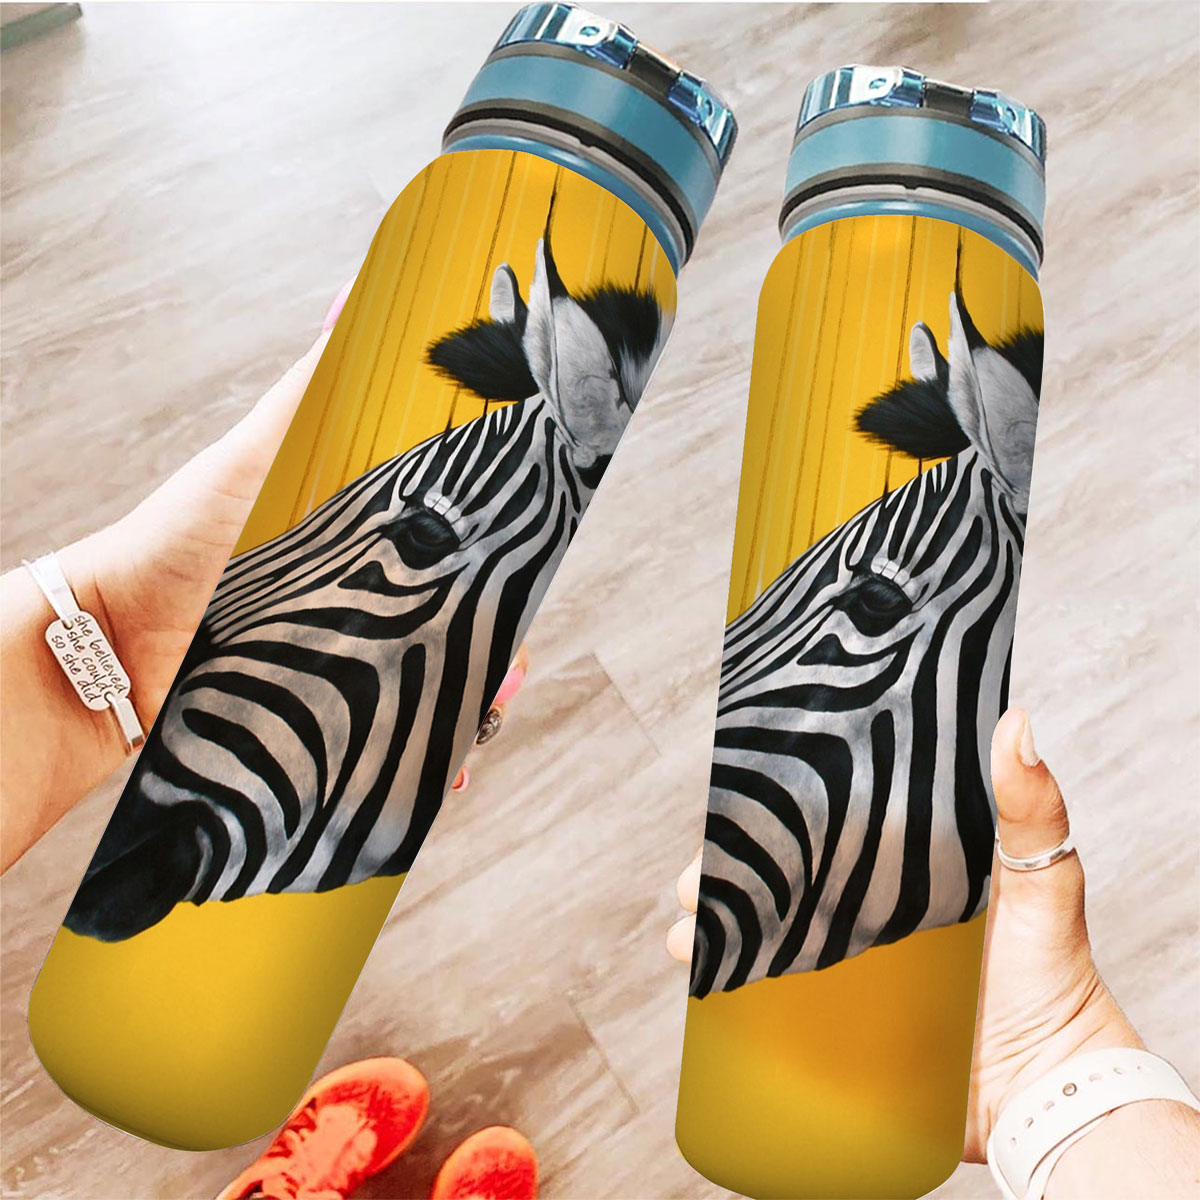 Zebra Abstract Tracker Bottle_1_2.1